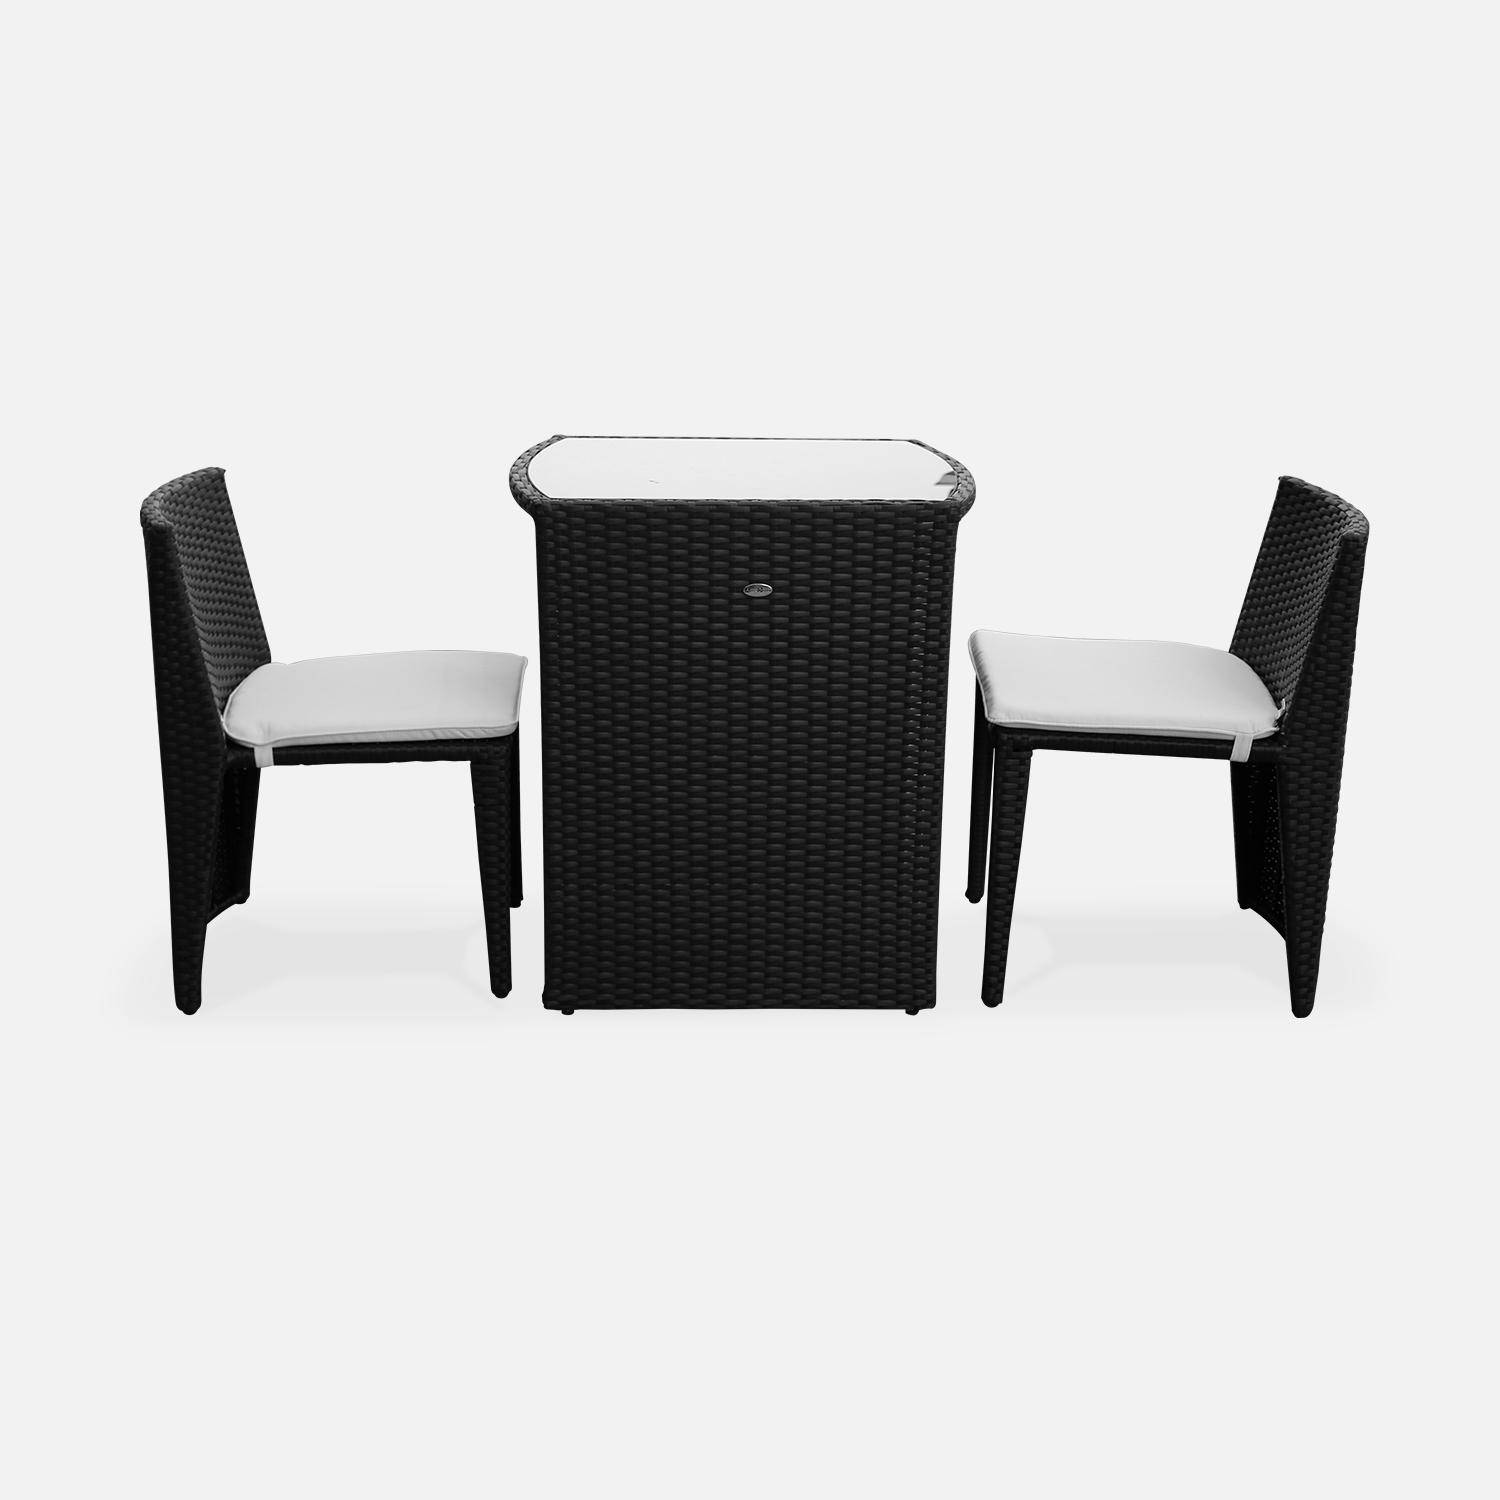 Ensemble Doppio, 2 chaises et 1 table ovalisée en résine tressée Photo2